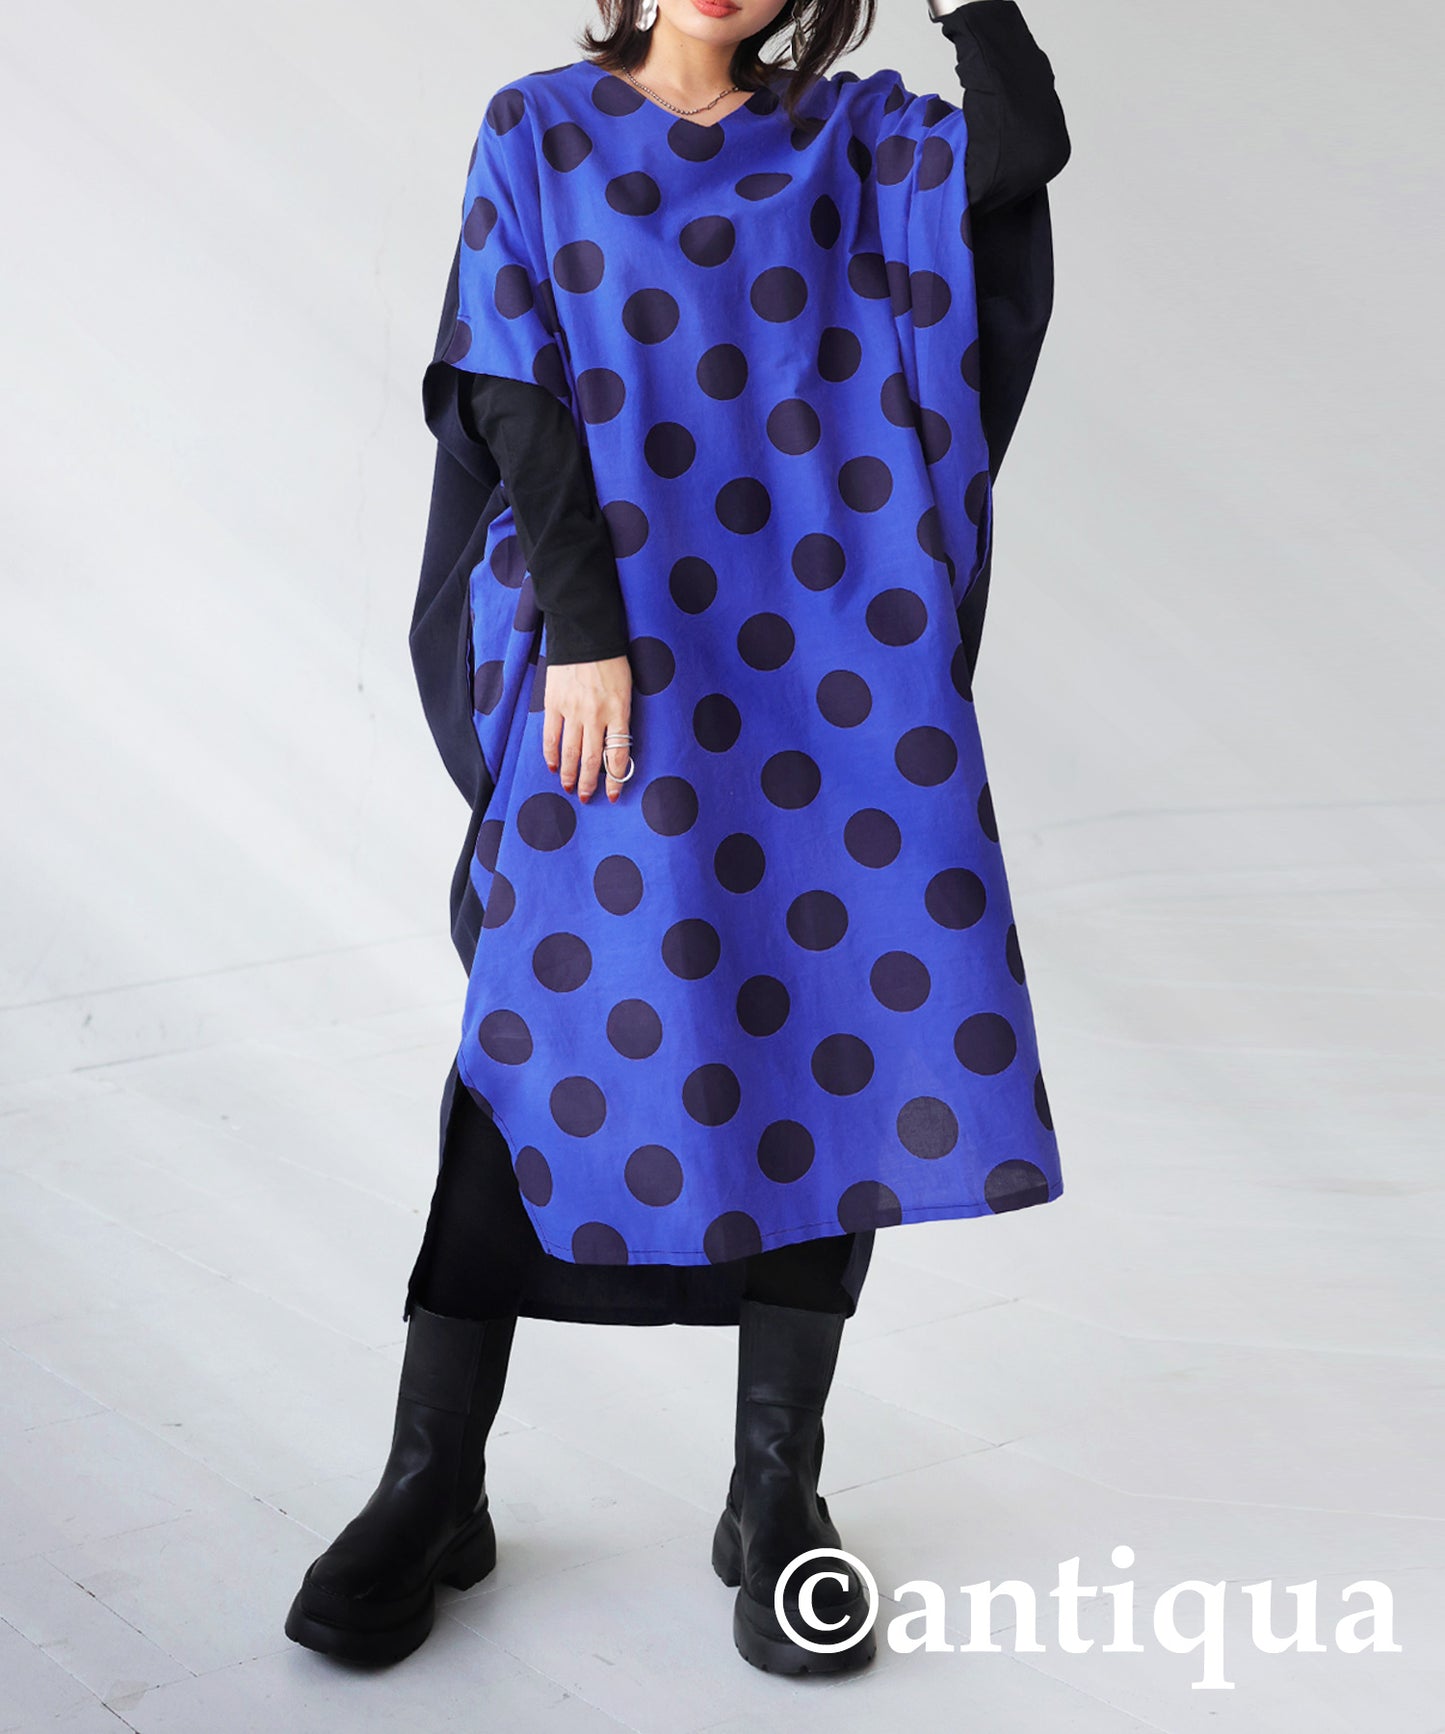 Dot pattern dolman Ladies Casual dress